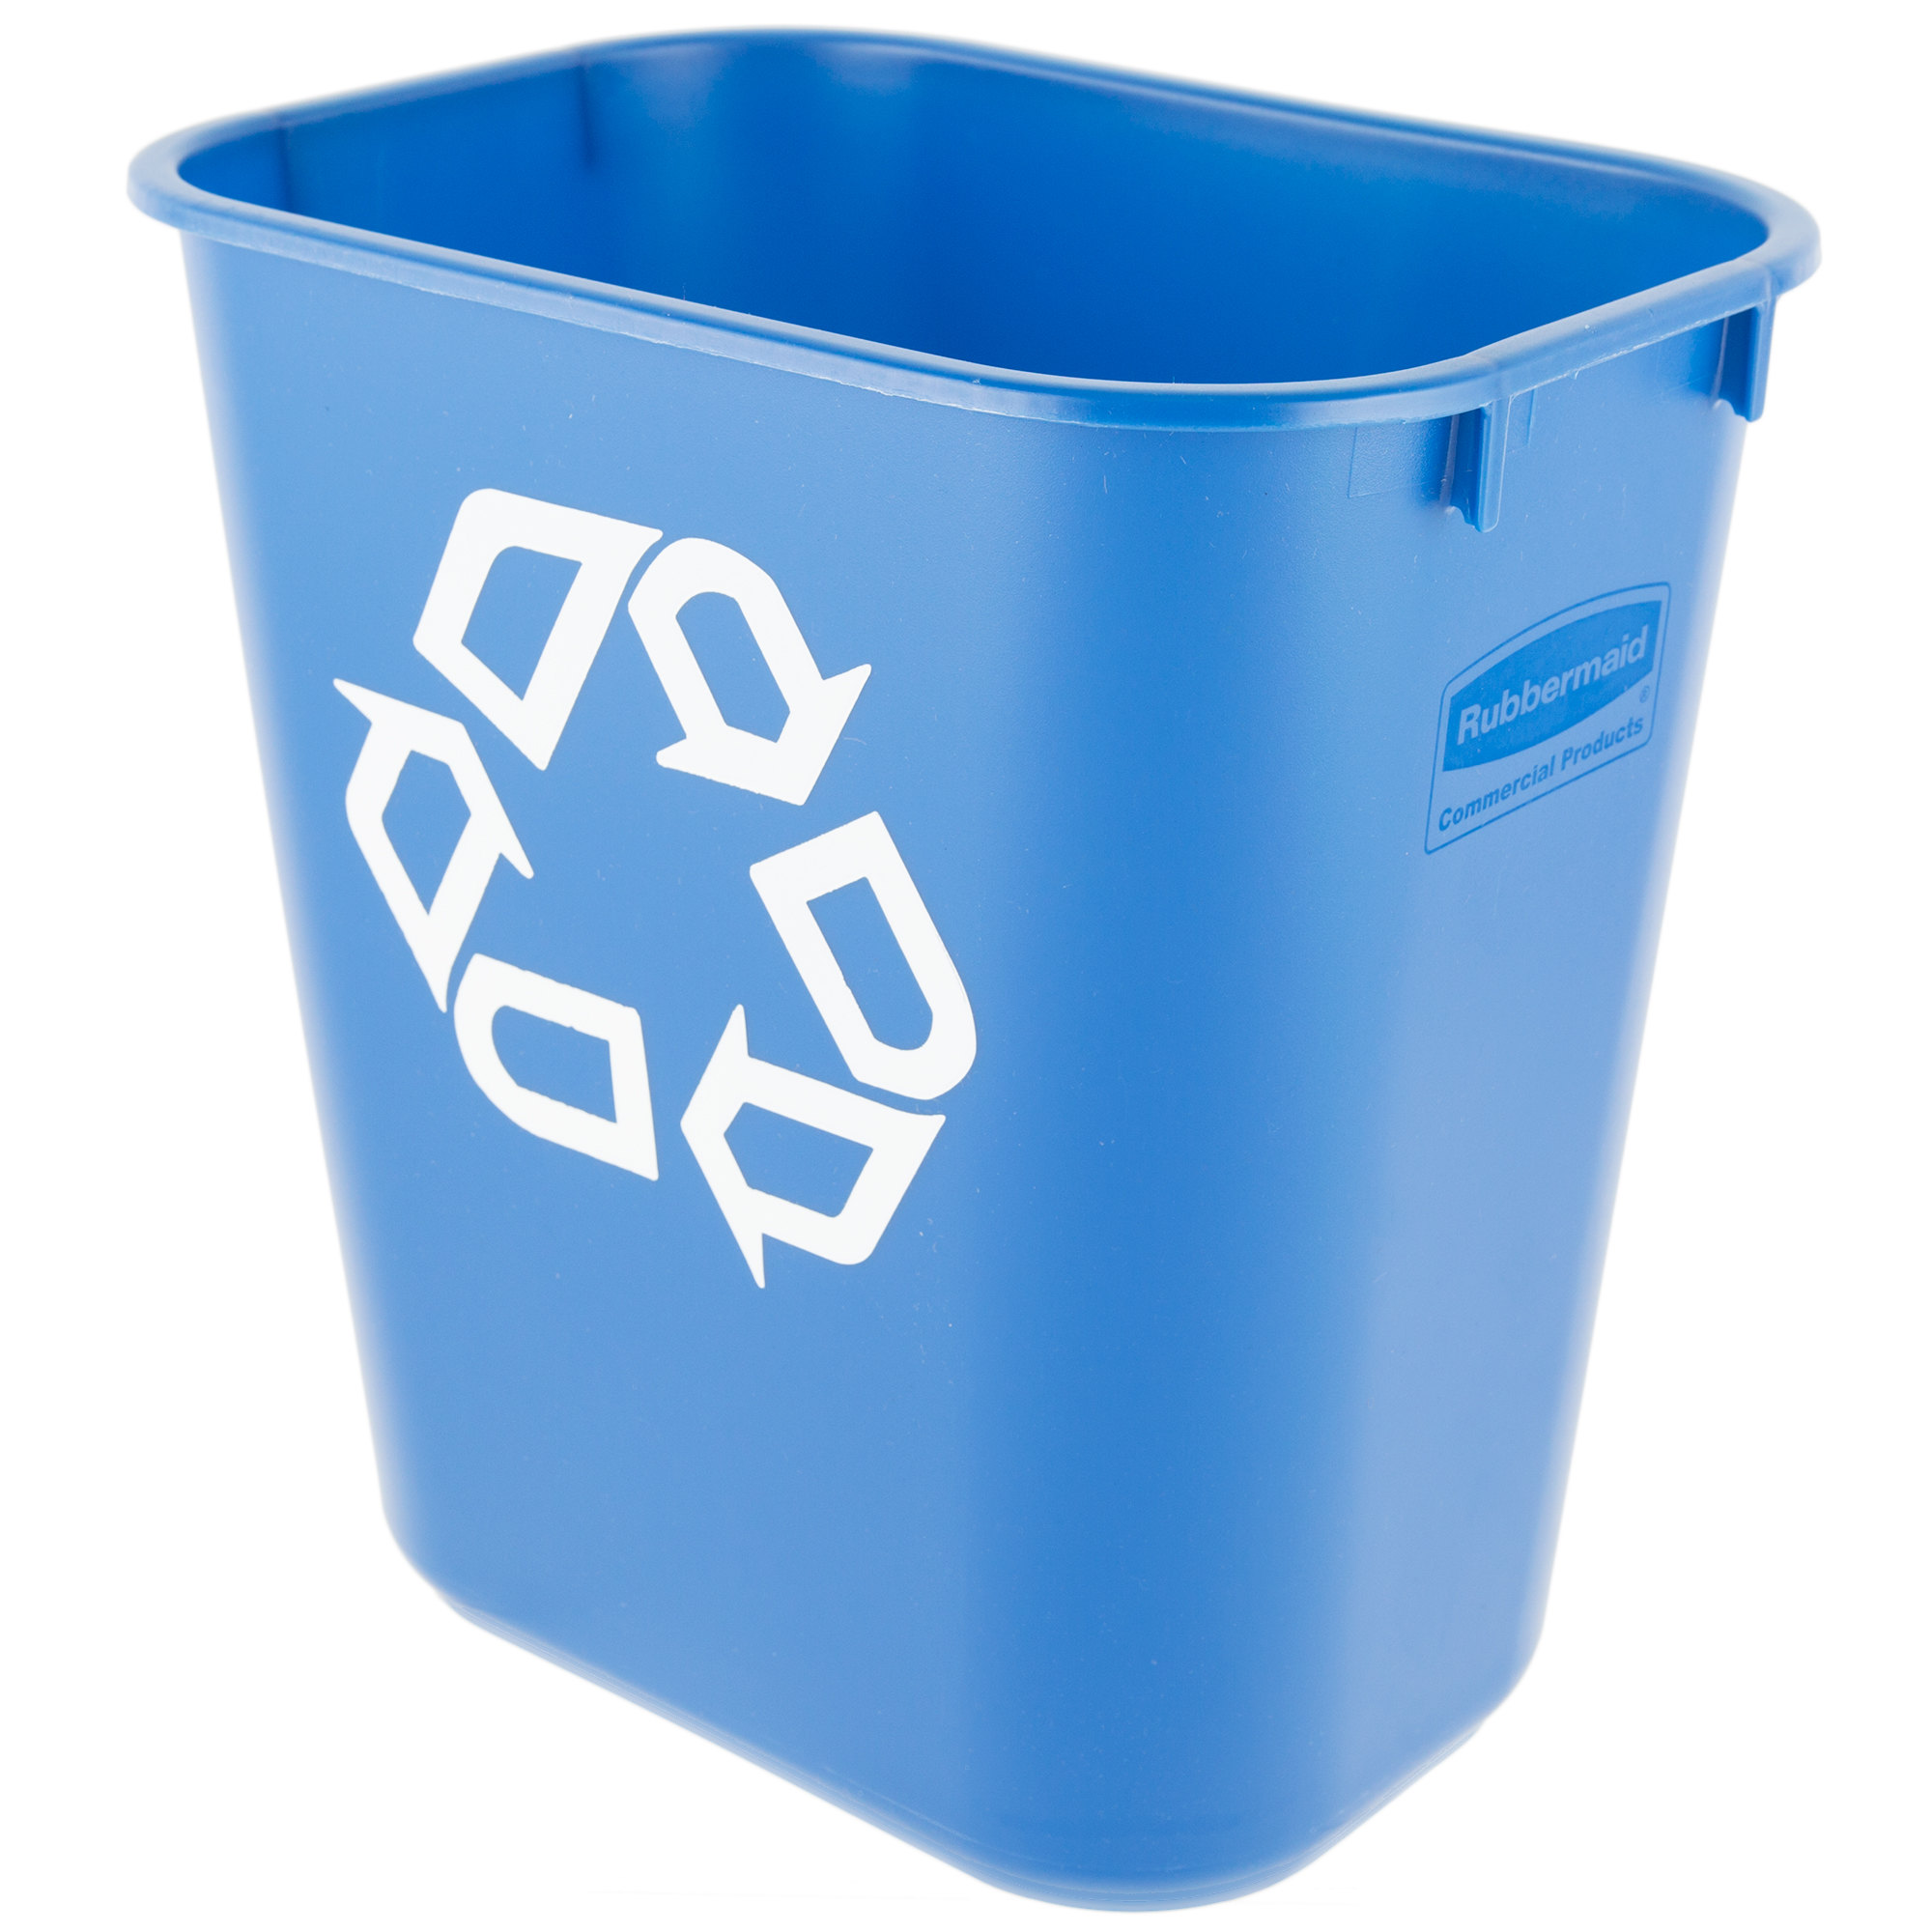 Rubbermaid FG295573BLUE cesto para reciclaje mediano con capacidad para 3.5 galones, color azul